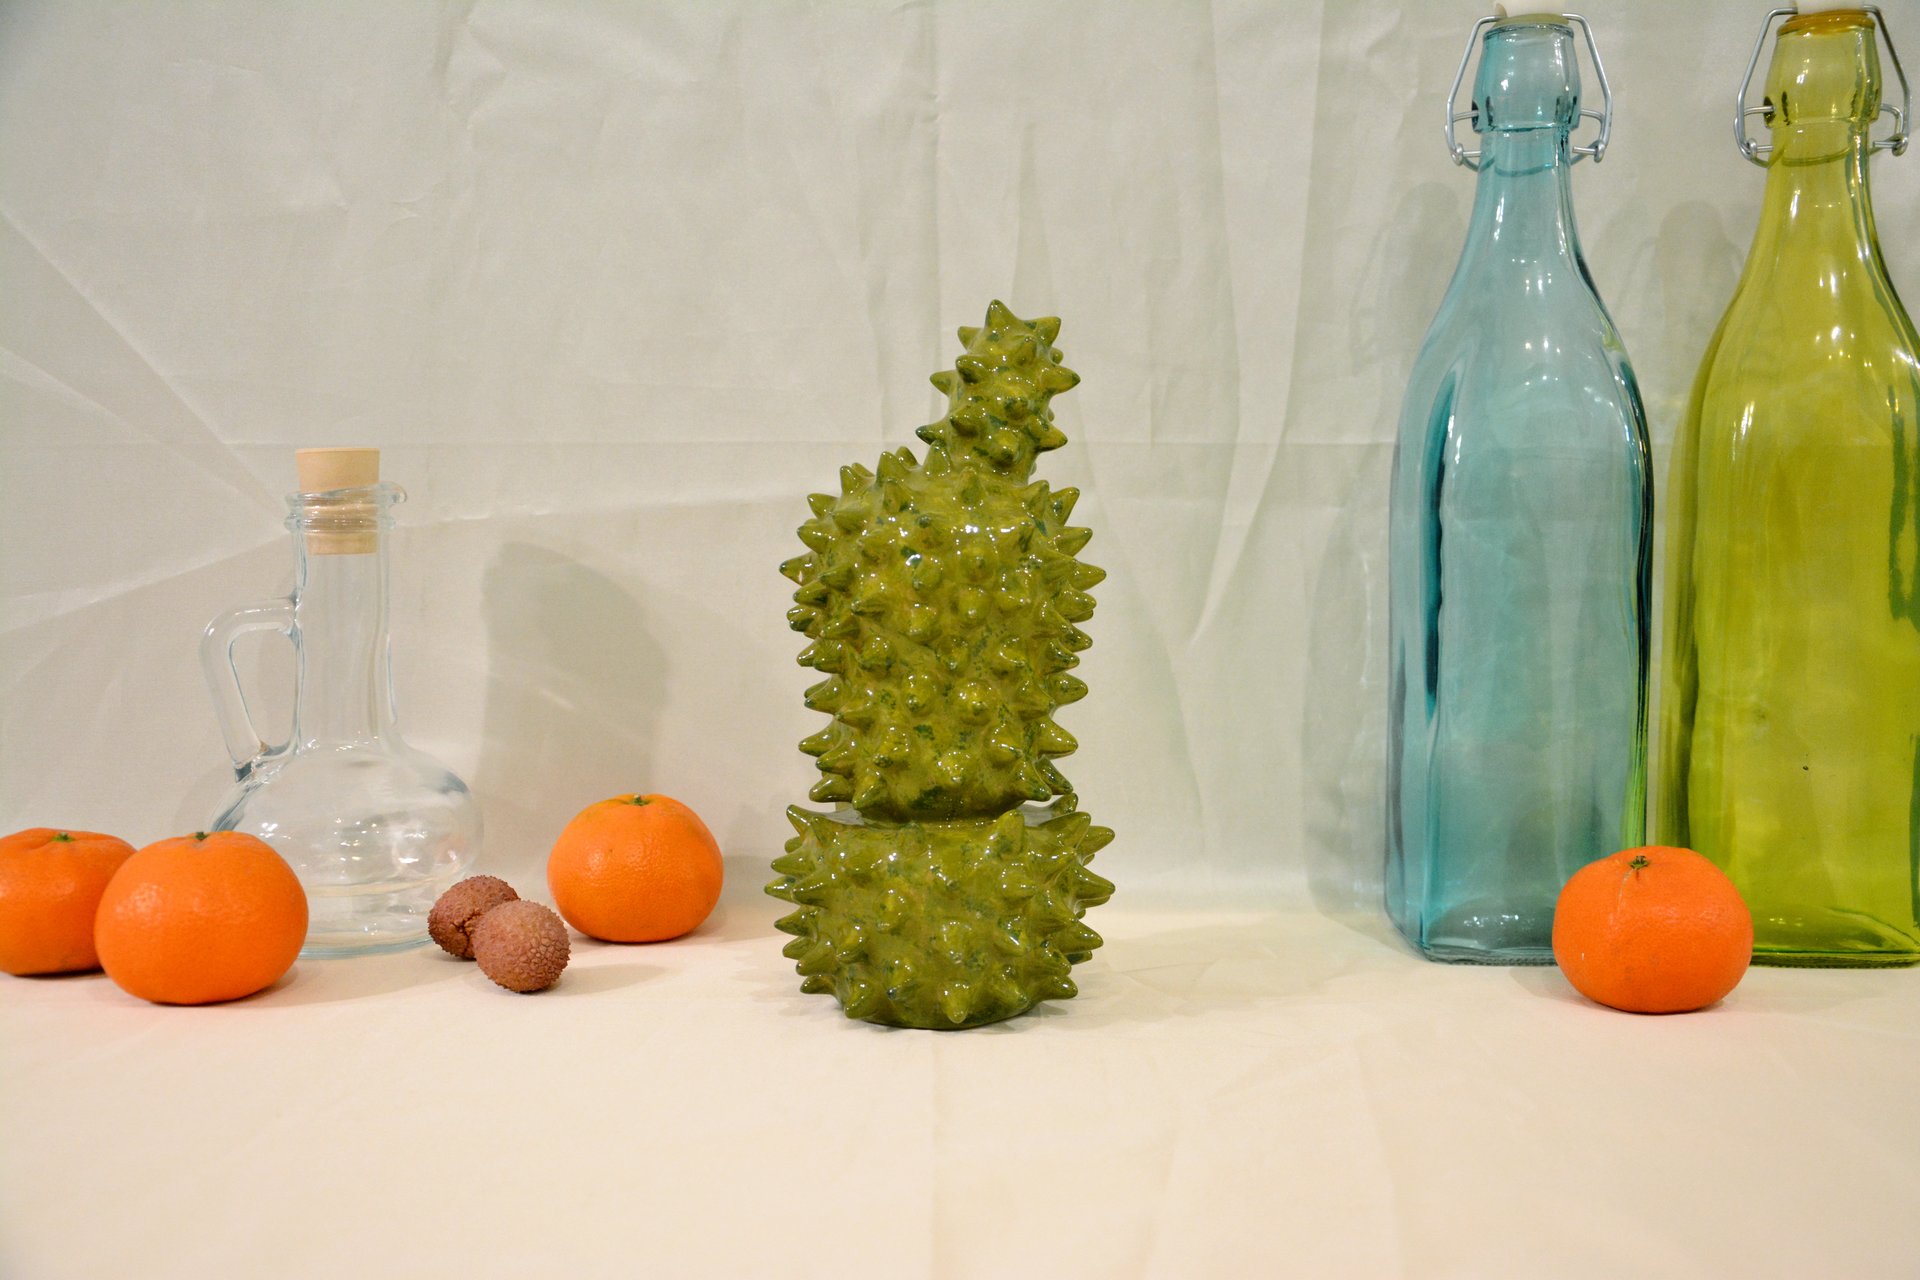 Декоративный кактус Эхинопсис - Кактусы керамические, высота - 21 см, фото 5 из 5.